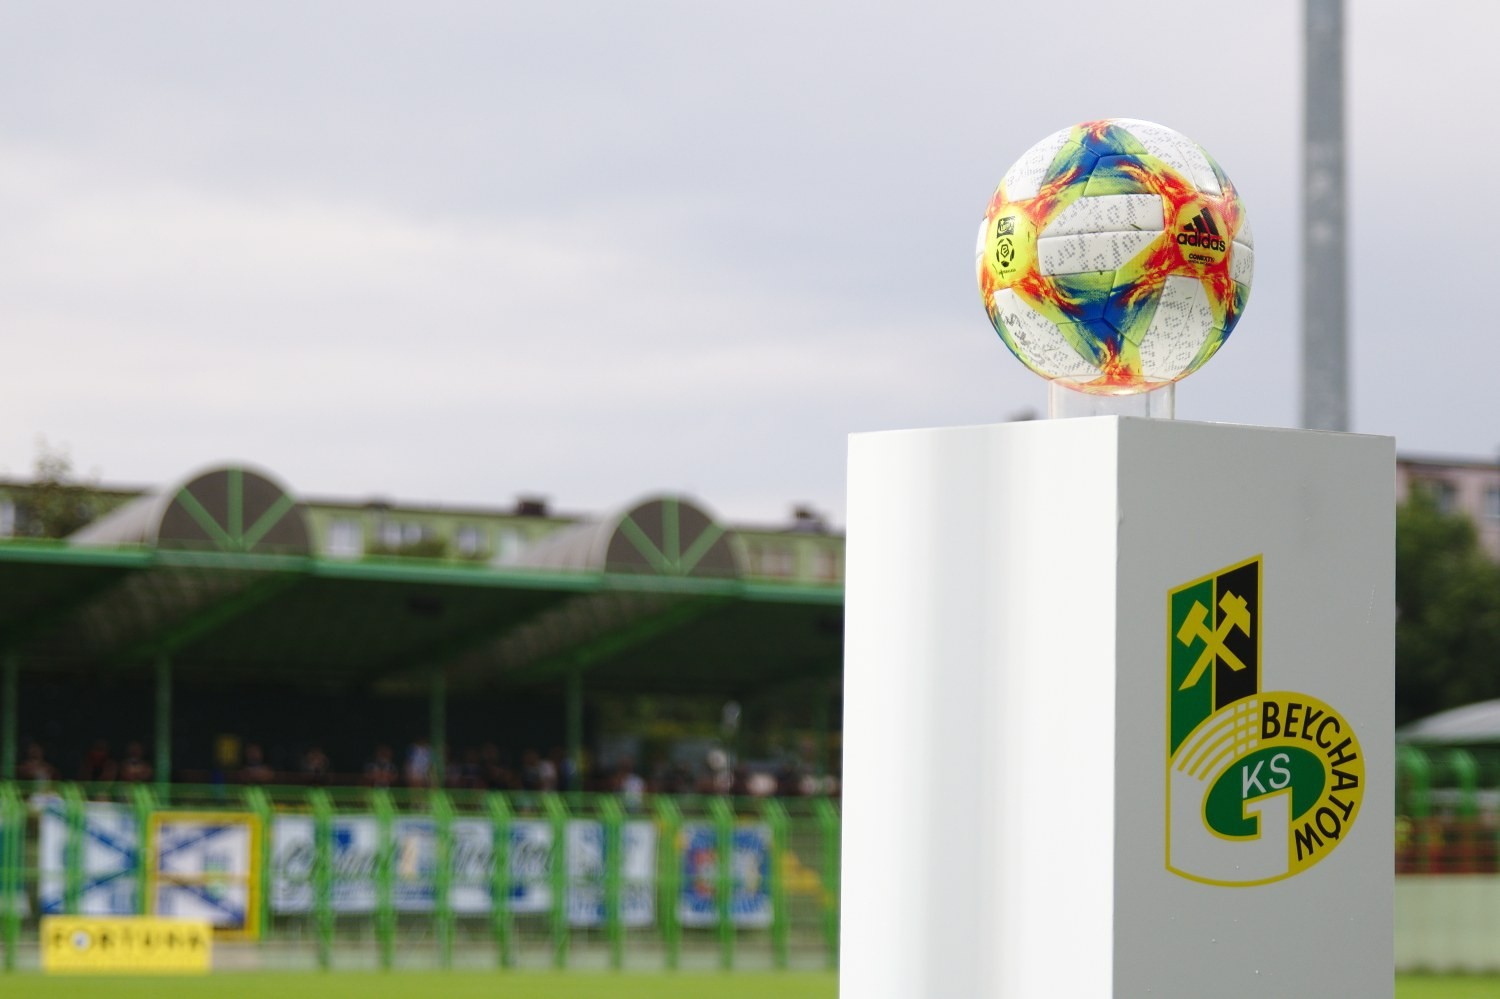 OFICJALNIE: GKS Bełchatów-reaktywacja. Klub zgłoszony do nowych rozgrywek